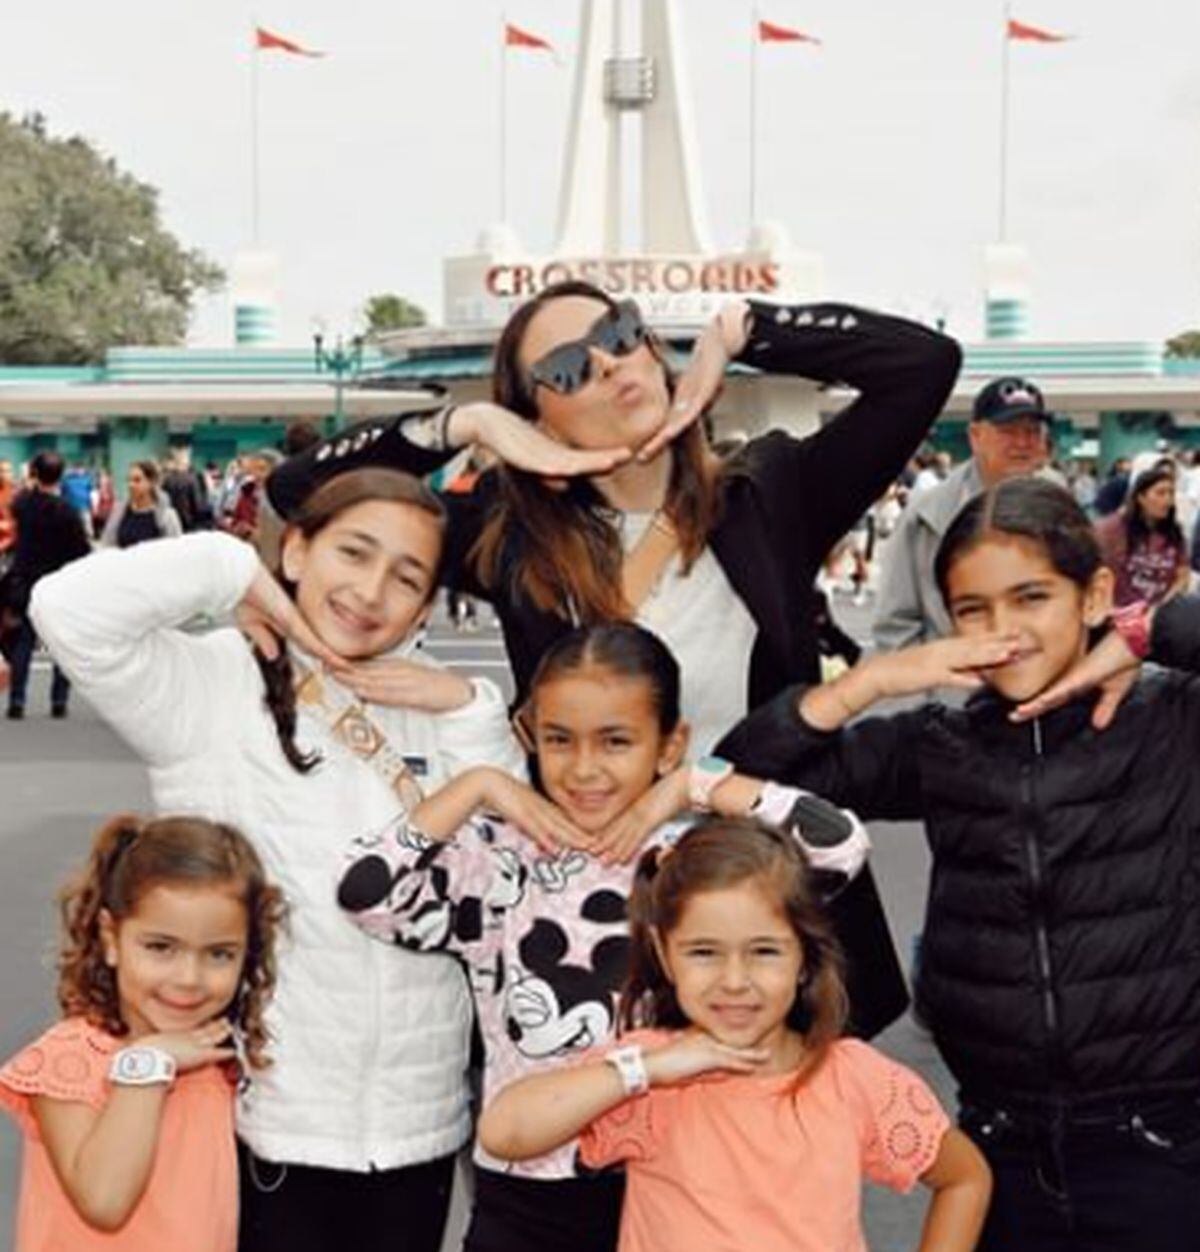 Esta celebridad mexicana viajó con su familia a Disney (Foto: Jacky Bracamontes / Instagram)